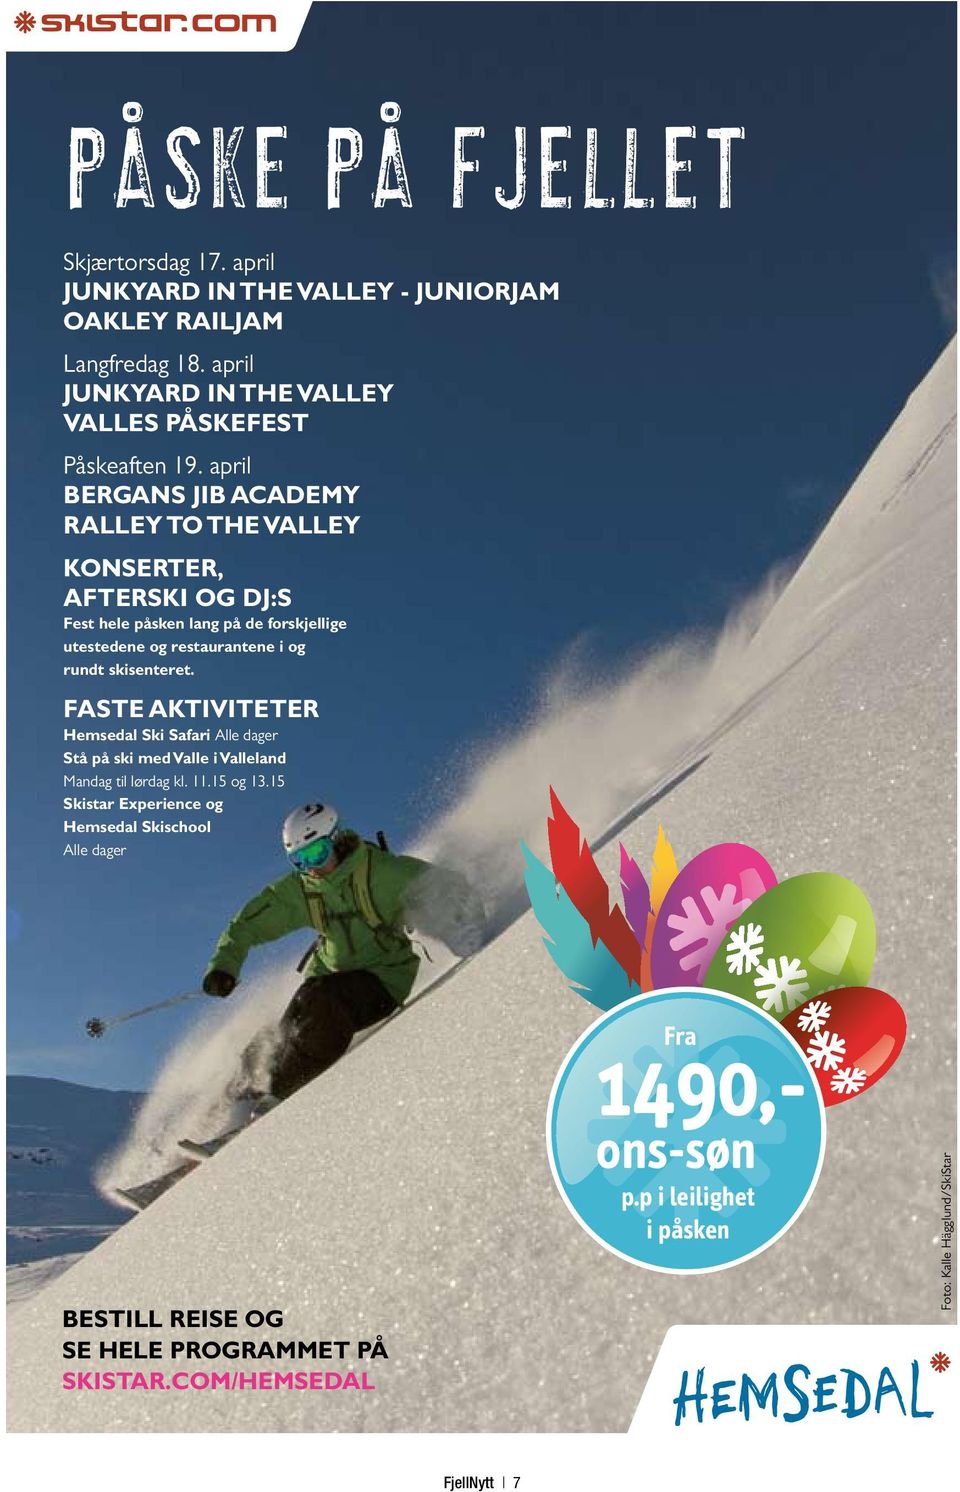 FASTE AKTIVITETER Hemsedal Ski Safari Alle dager Stå på ski med Valle i Valleland Mandag til lørdag kl. 11.15 og 13.